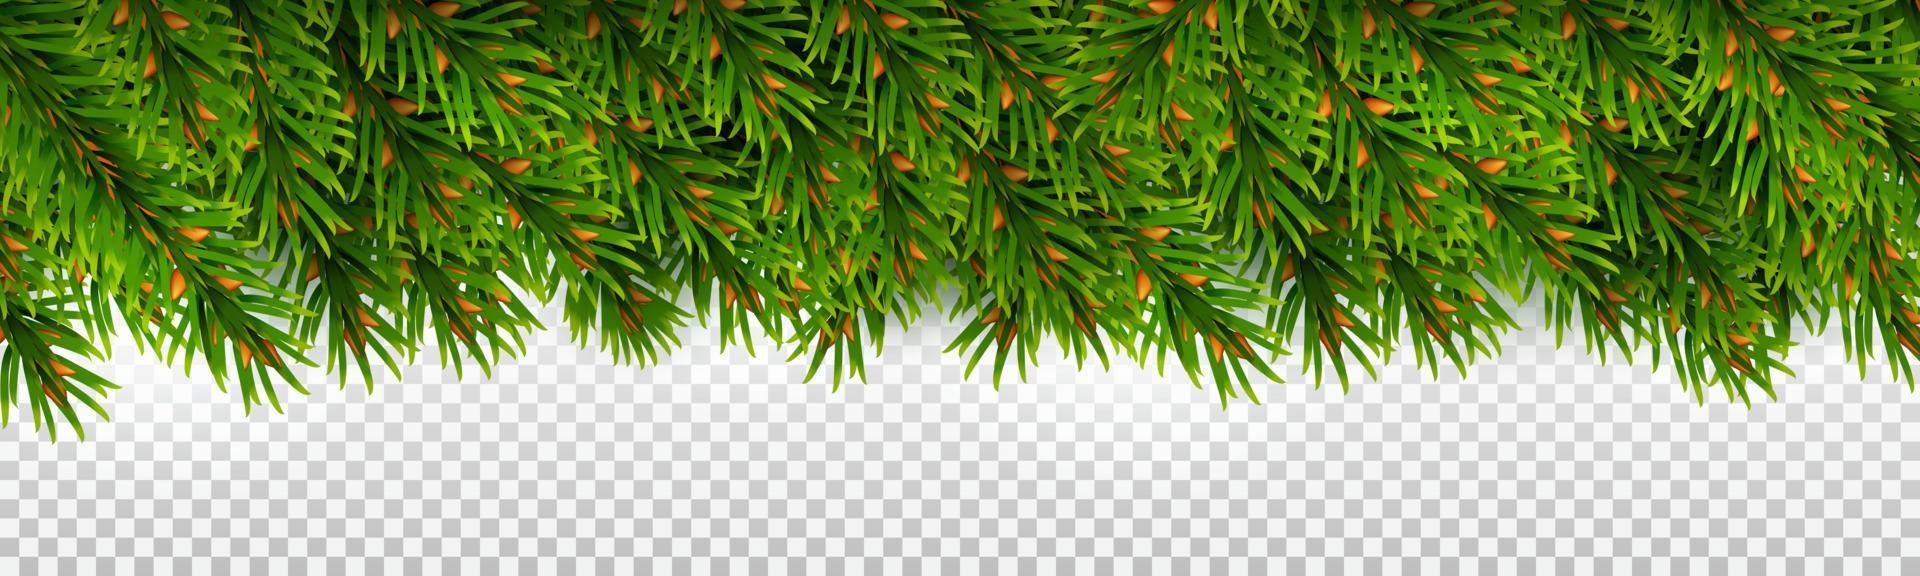 borda horizontal de ramos de abeto perene. para decorações de Natal e designs de cartões comemorativos. vetor